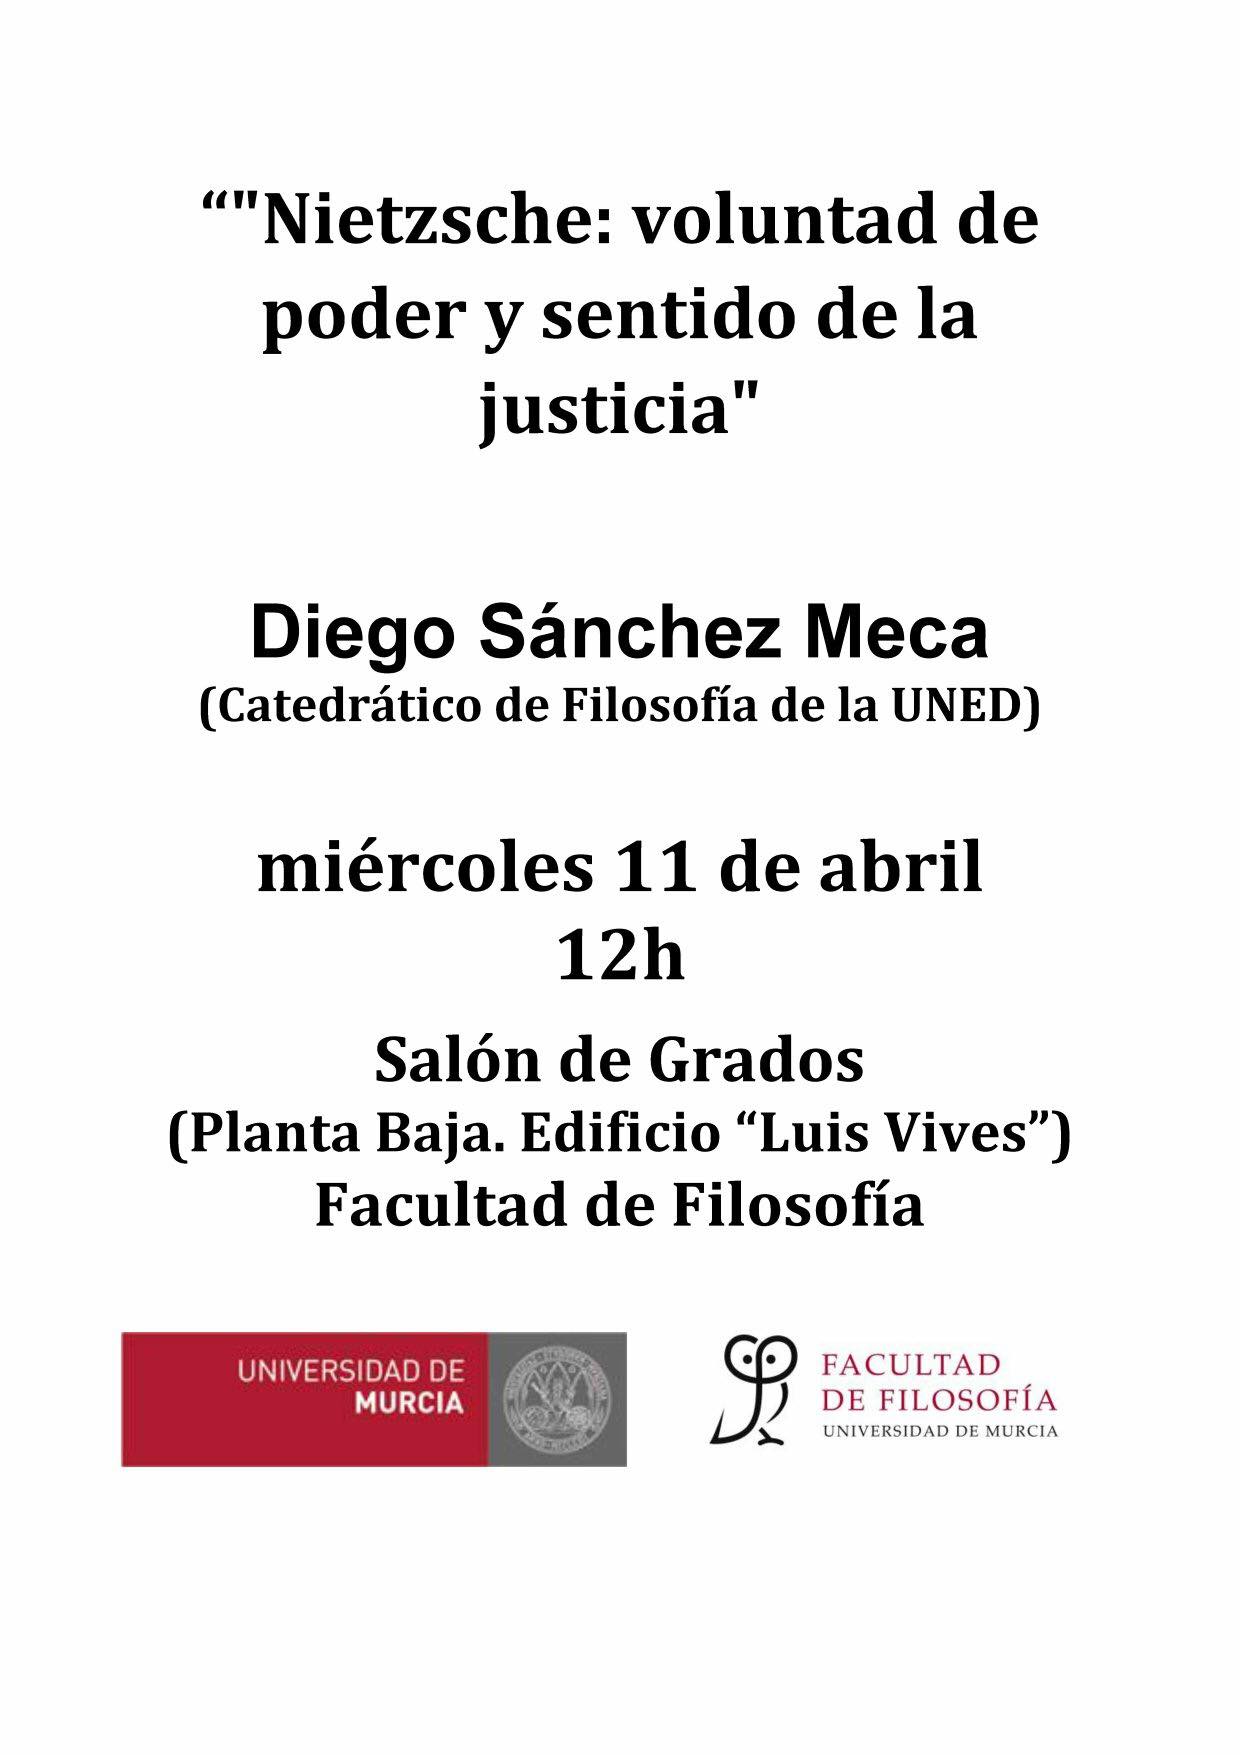 Conferencia de Diego Sánchez Meca sobre Nietzsche, la voluntad de poder y la idea de justicia